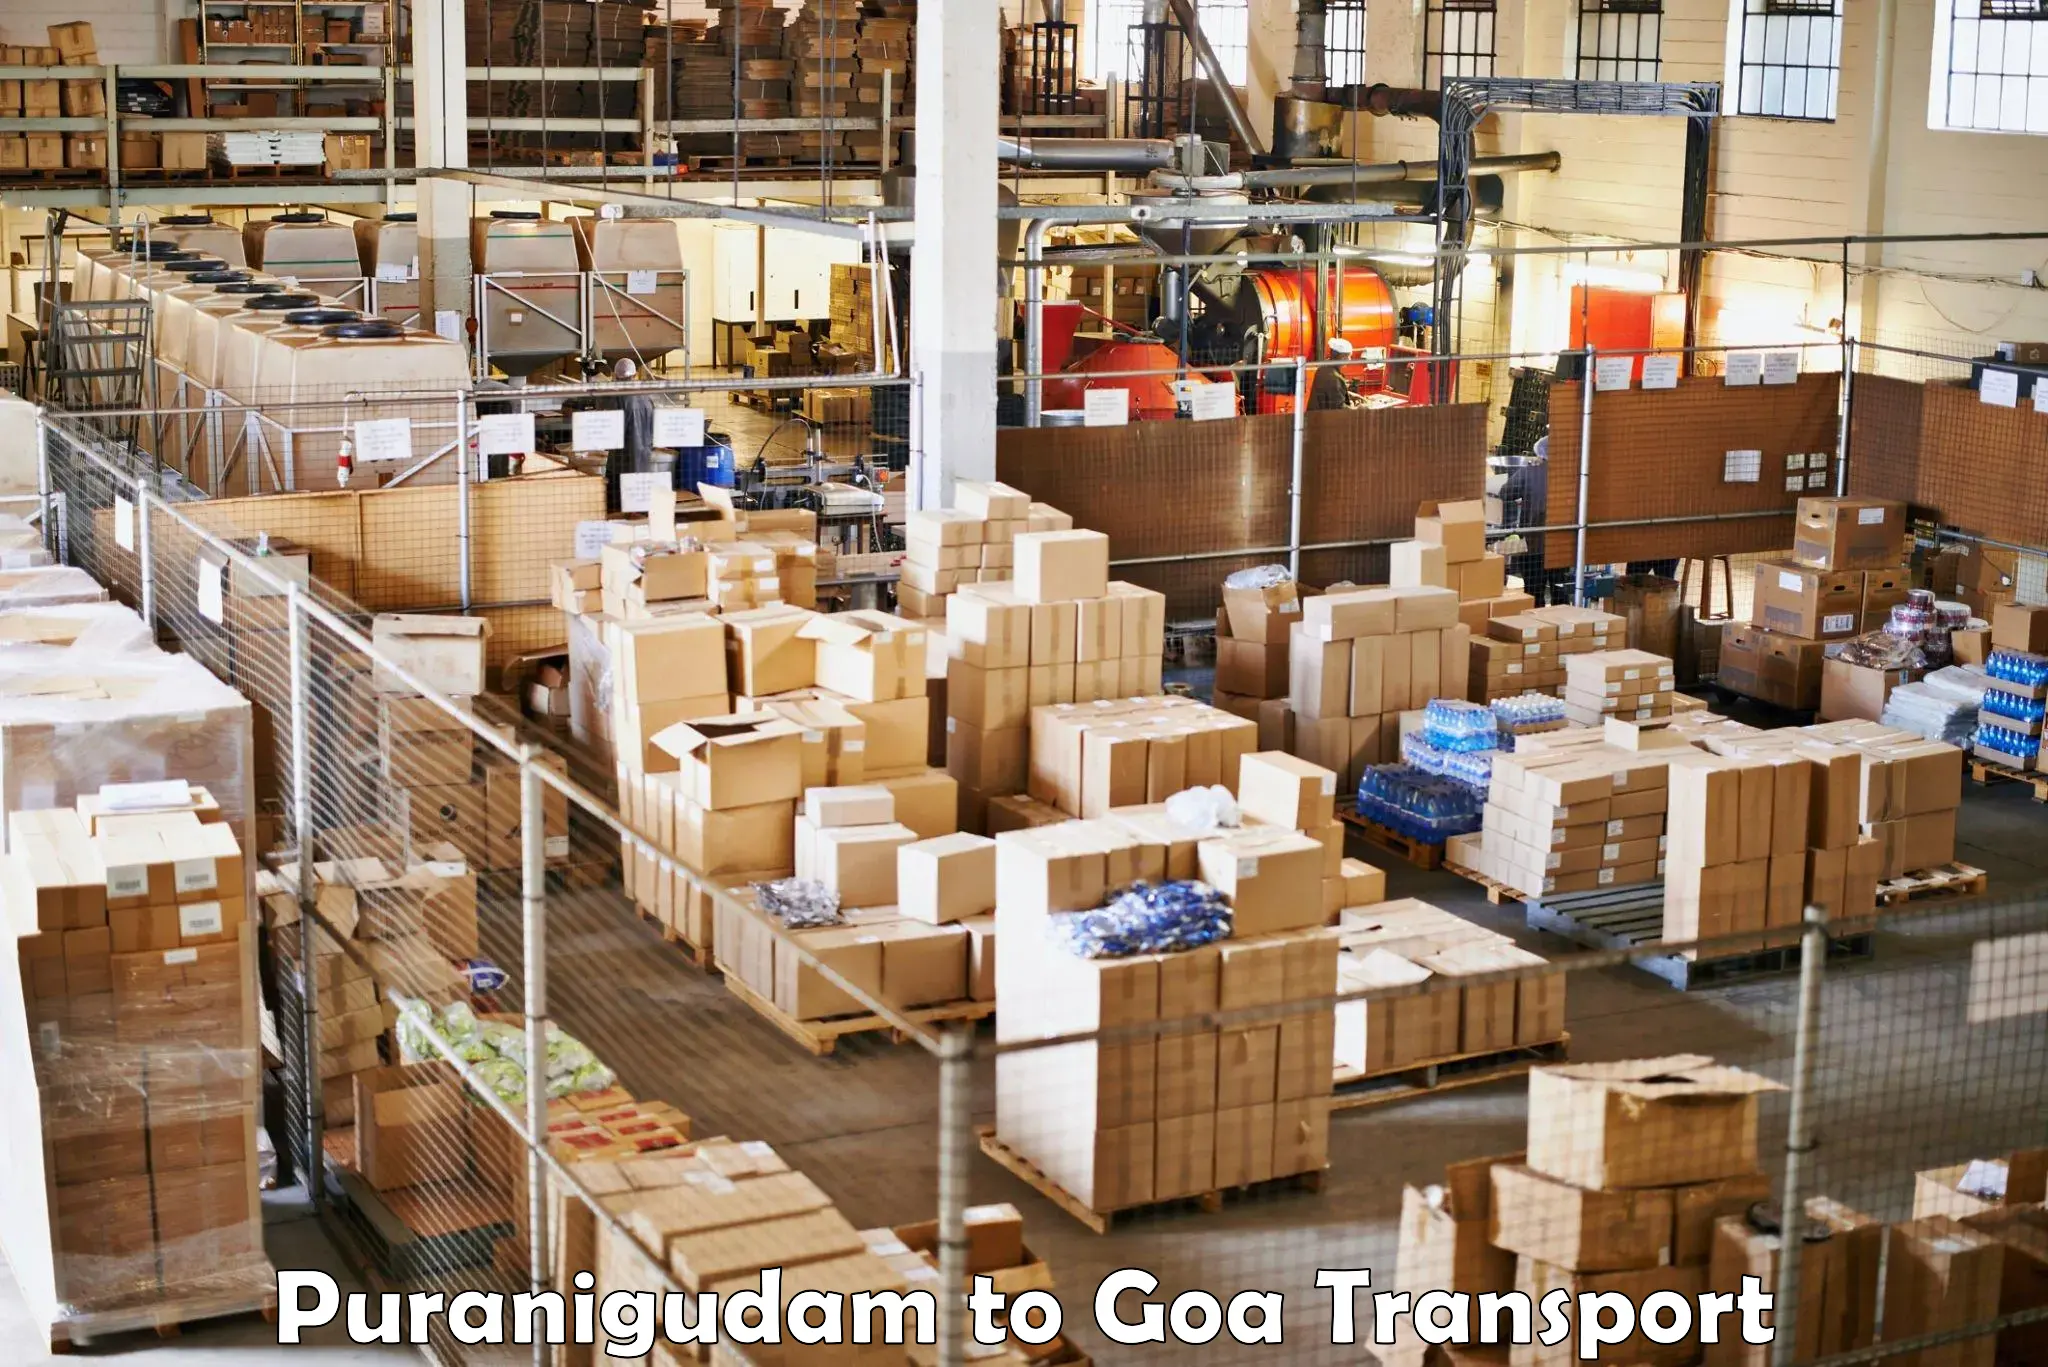 Online transport booking Puranigudam to IIT Goa